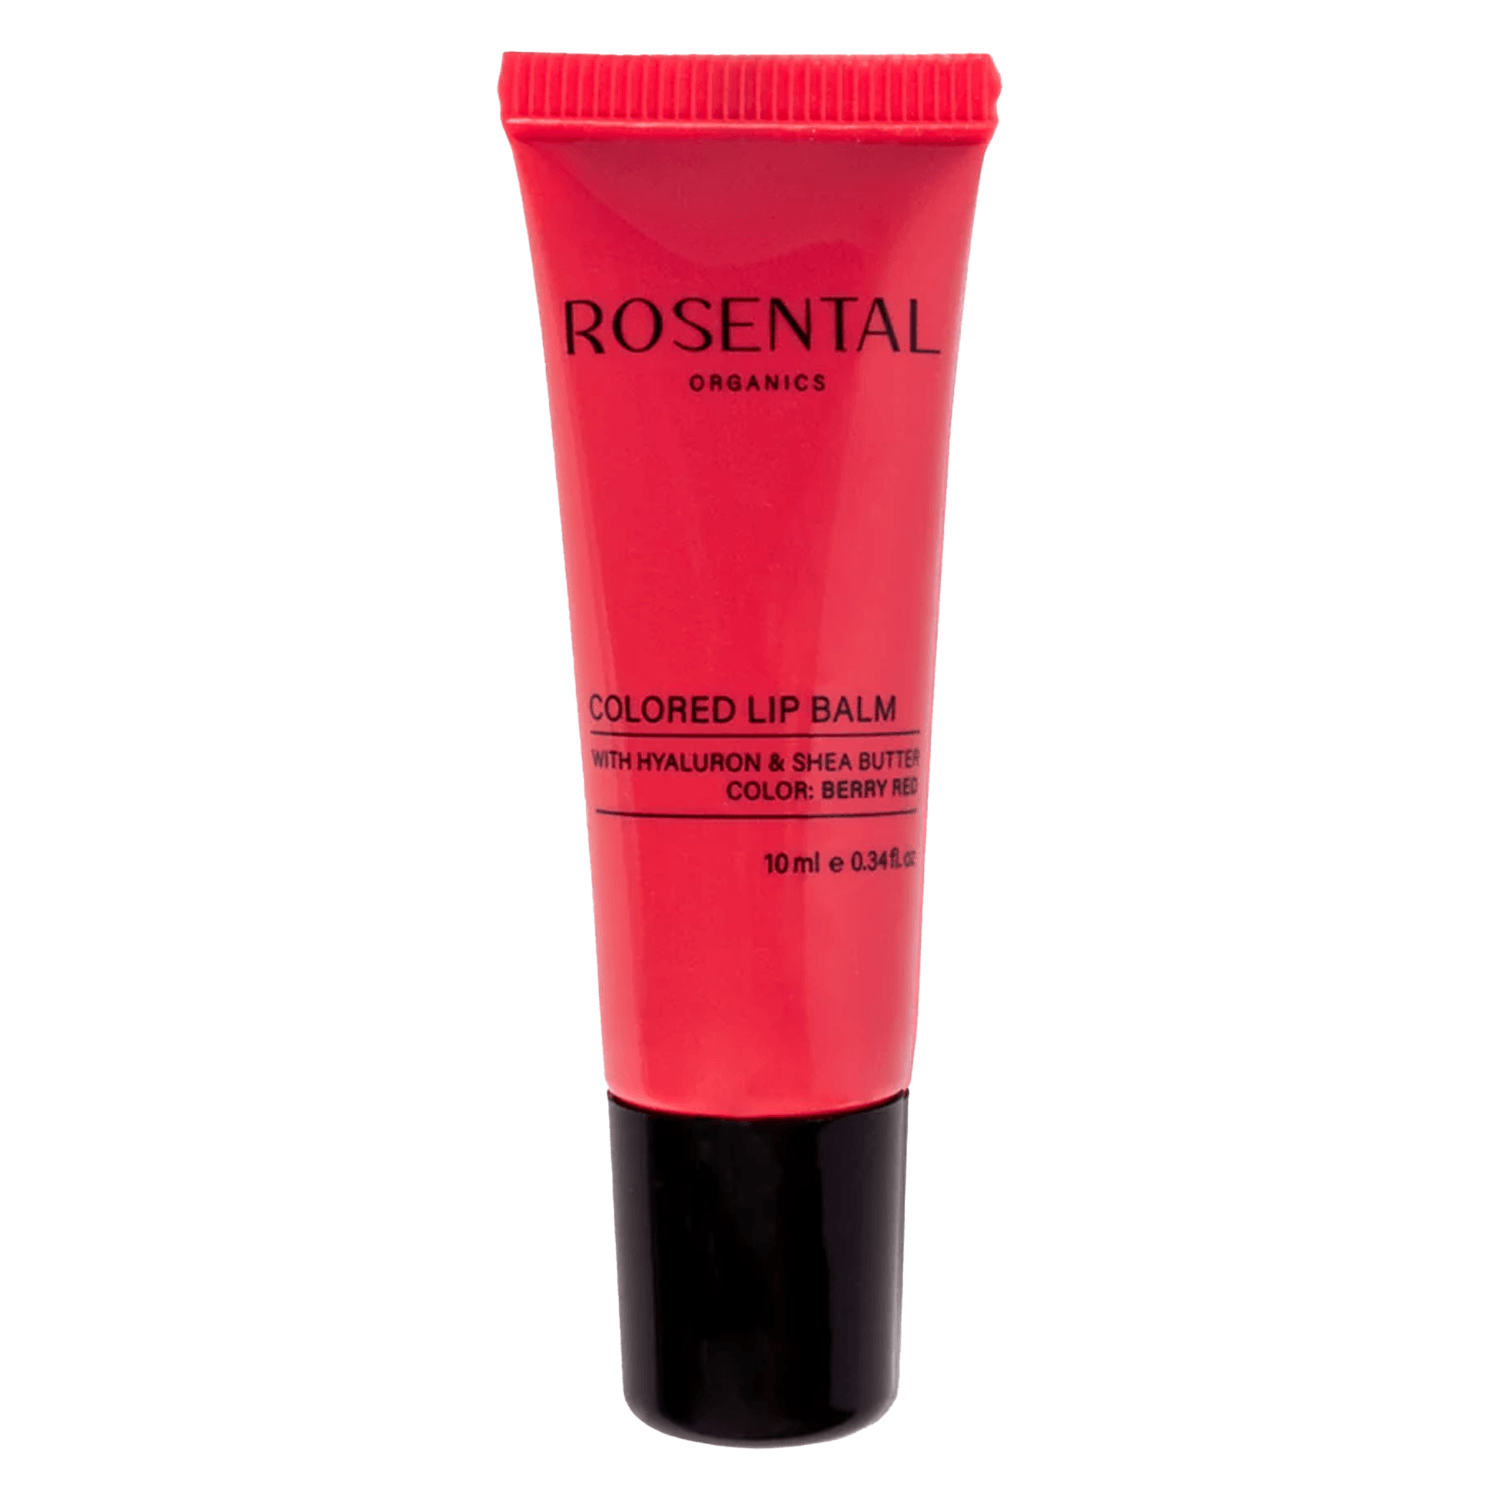 Produktbild von Rosental Make Up - Colored Lip Balm Berry Red